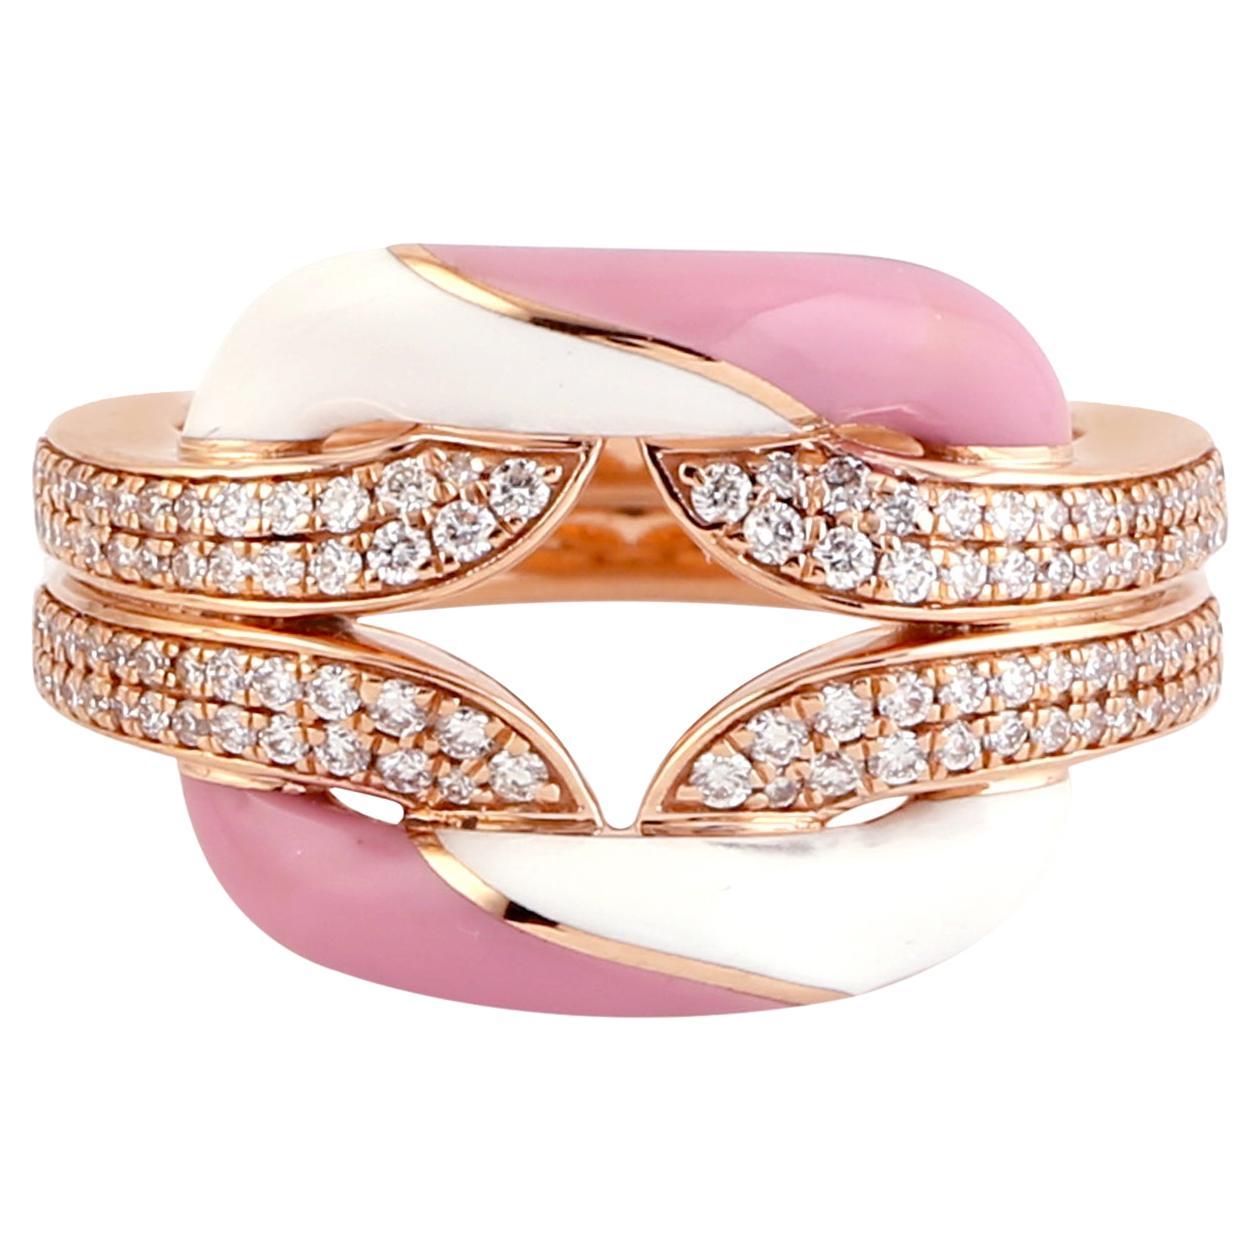 Rosa & Weiß Keramik Inlay Ring mit VS Diamanten in 18K Rose Gold gemacht